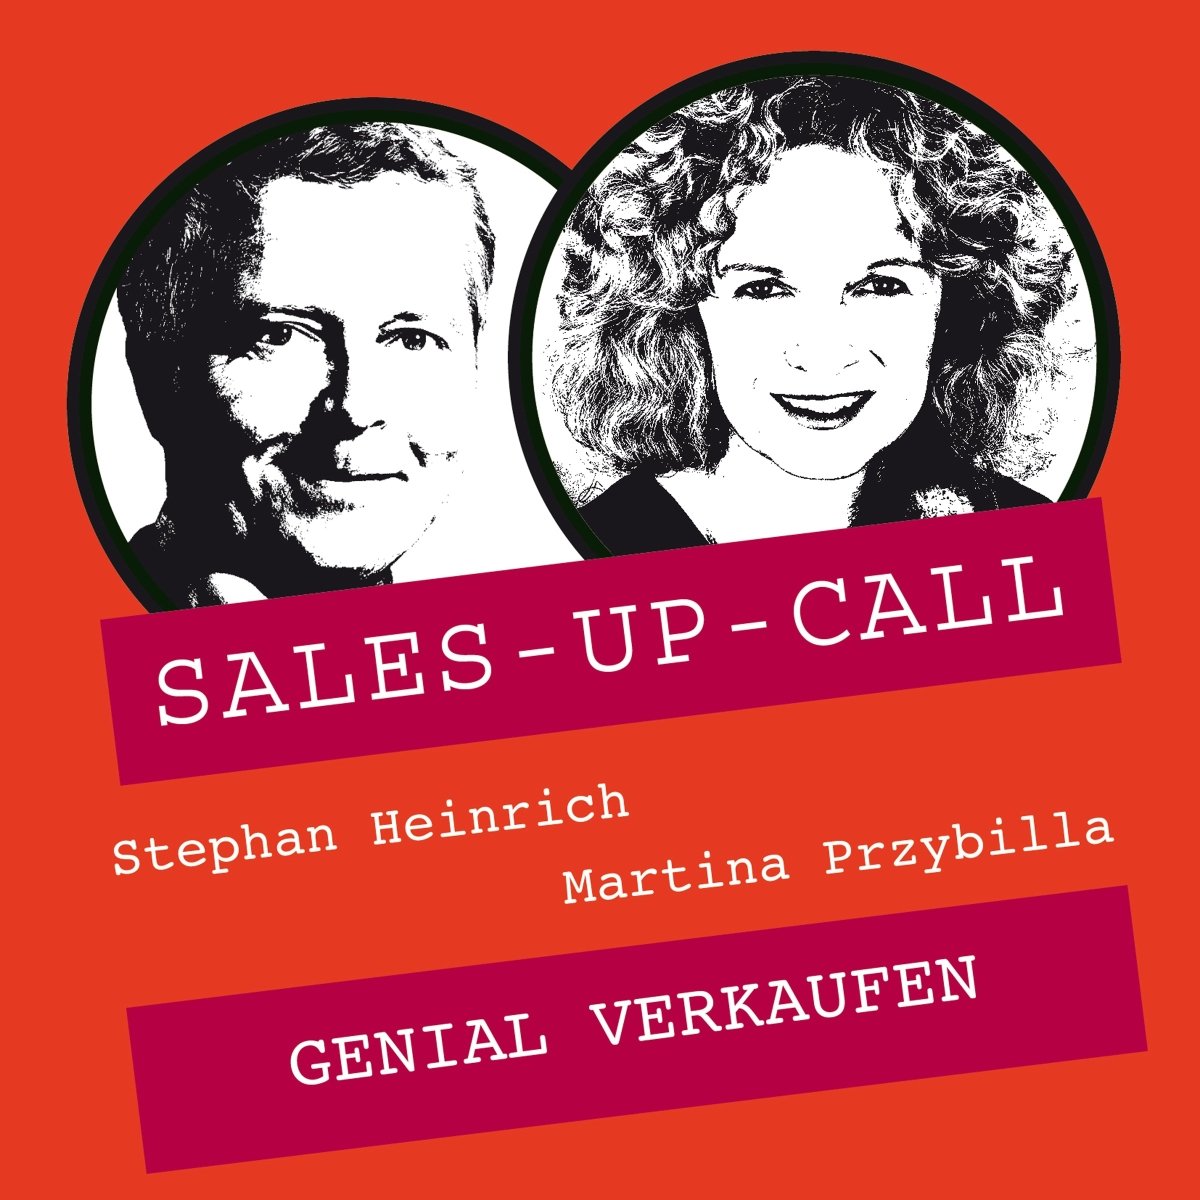 Genial verkaufen - Sales-up-Call - Stephan Heinrich